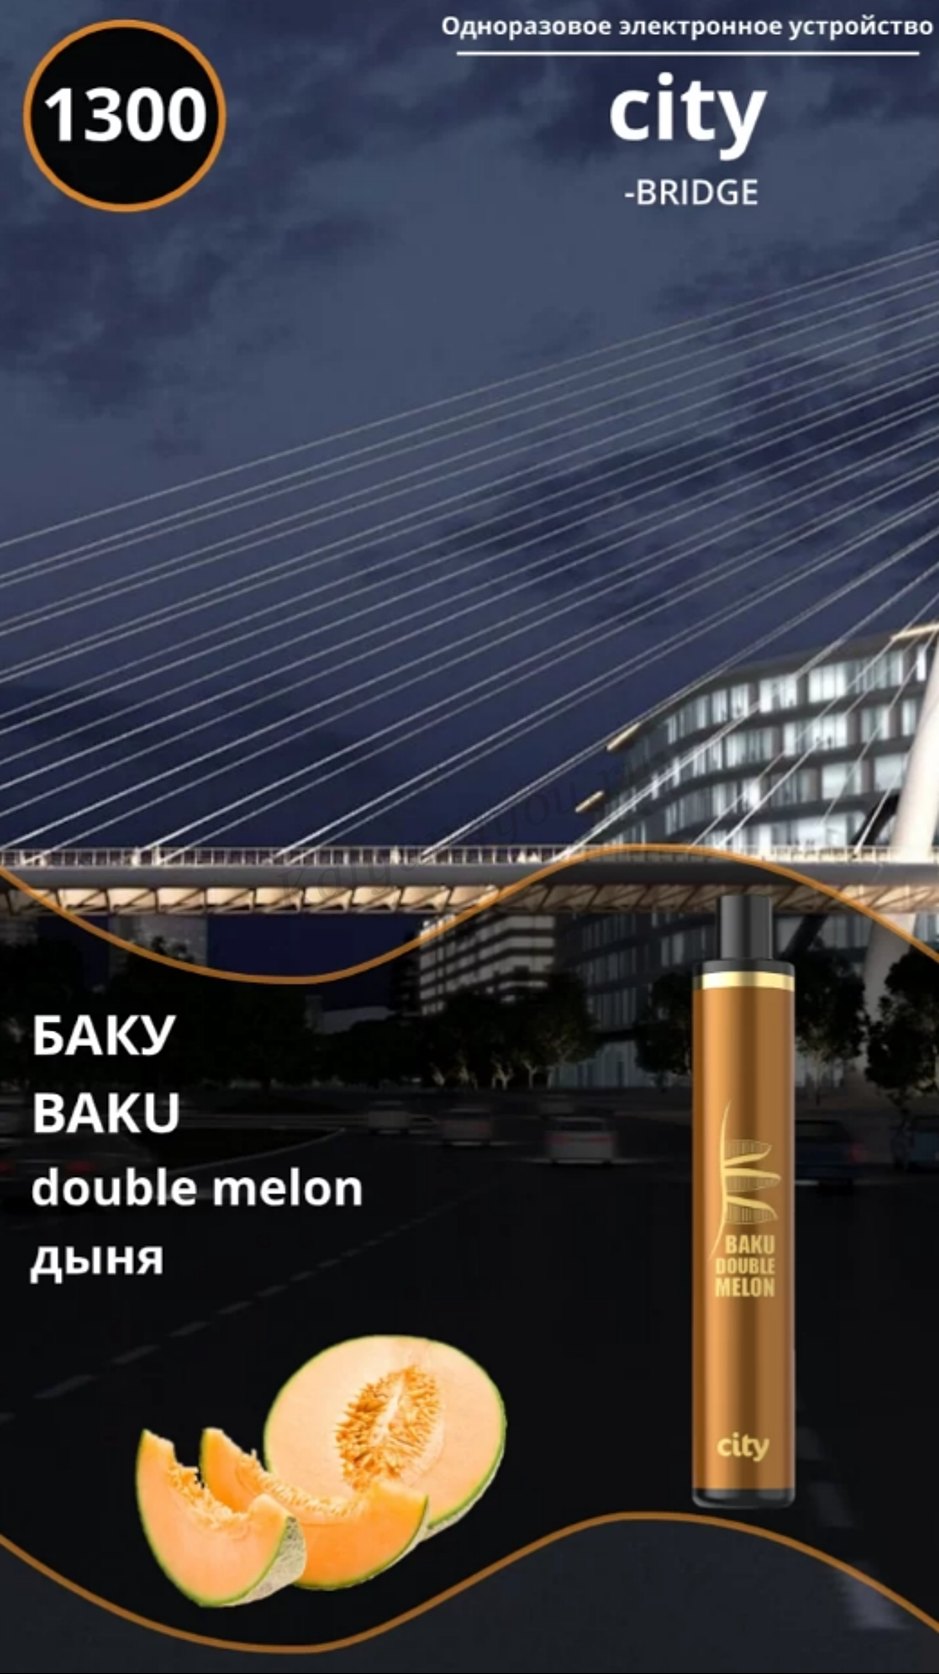 CITY BRIDGE 1300 / Баку / Арбуз Дыня